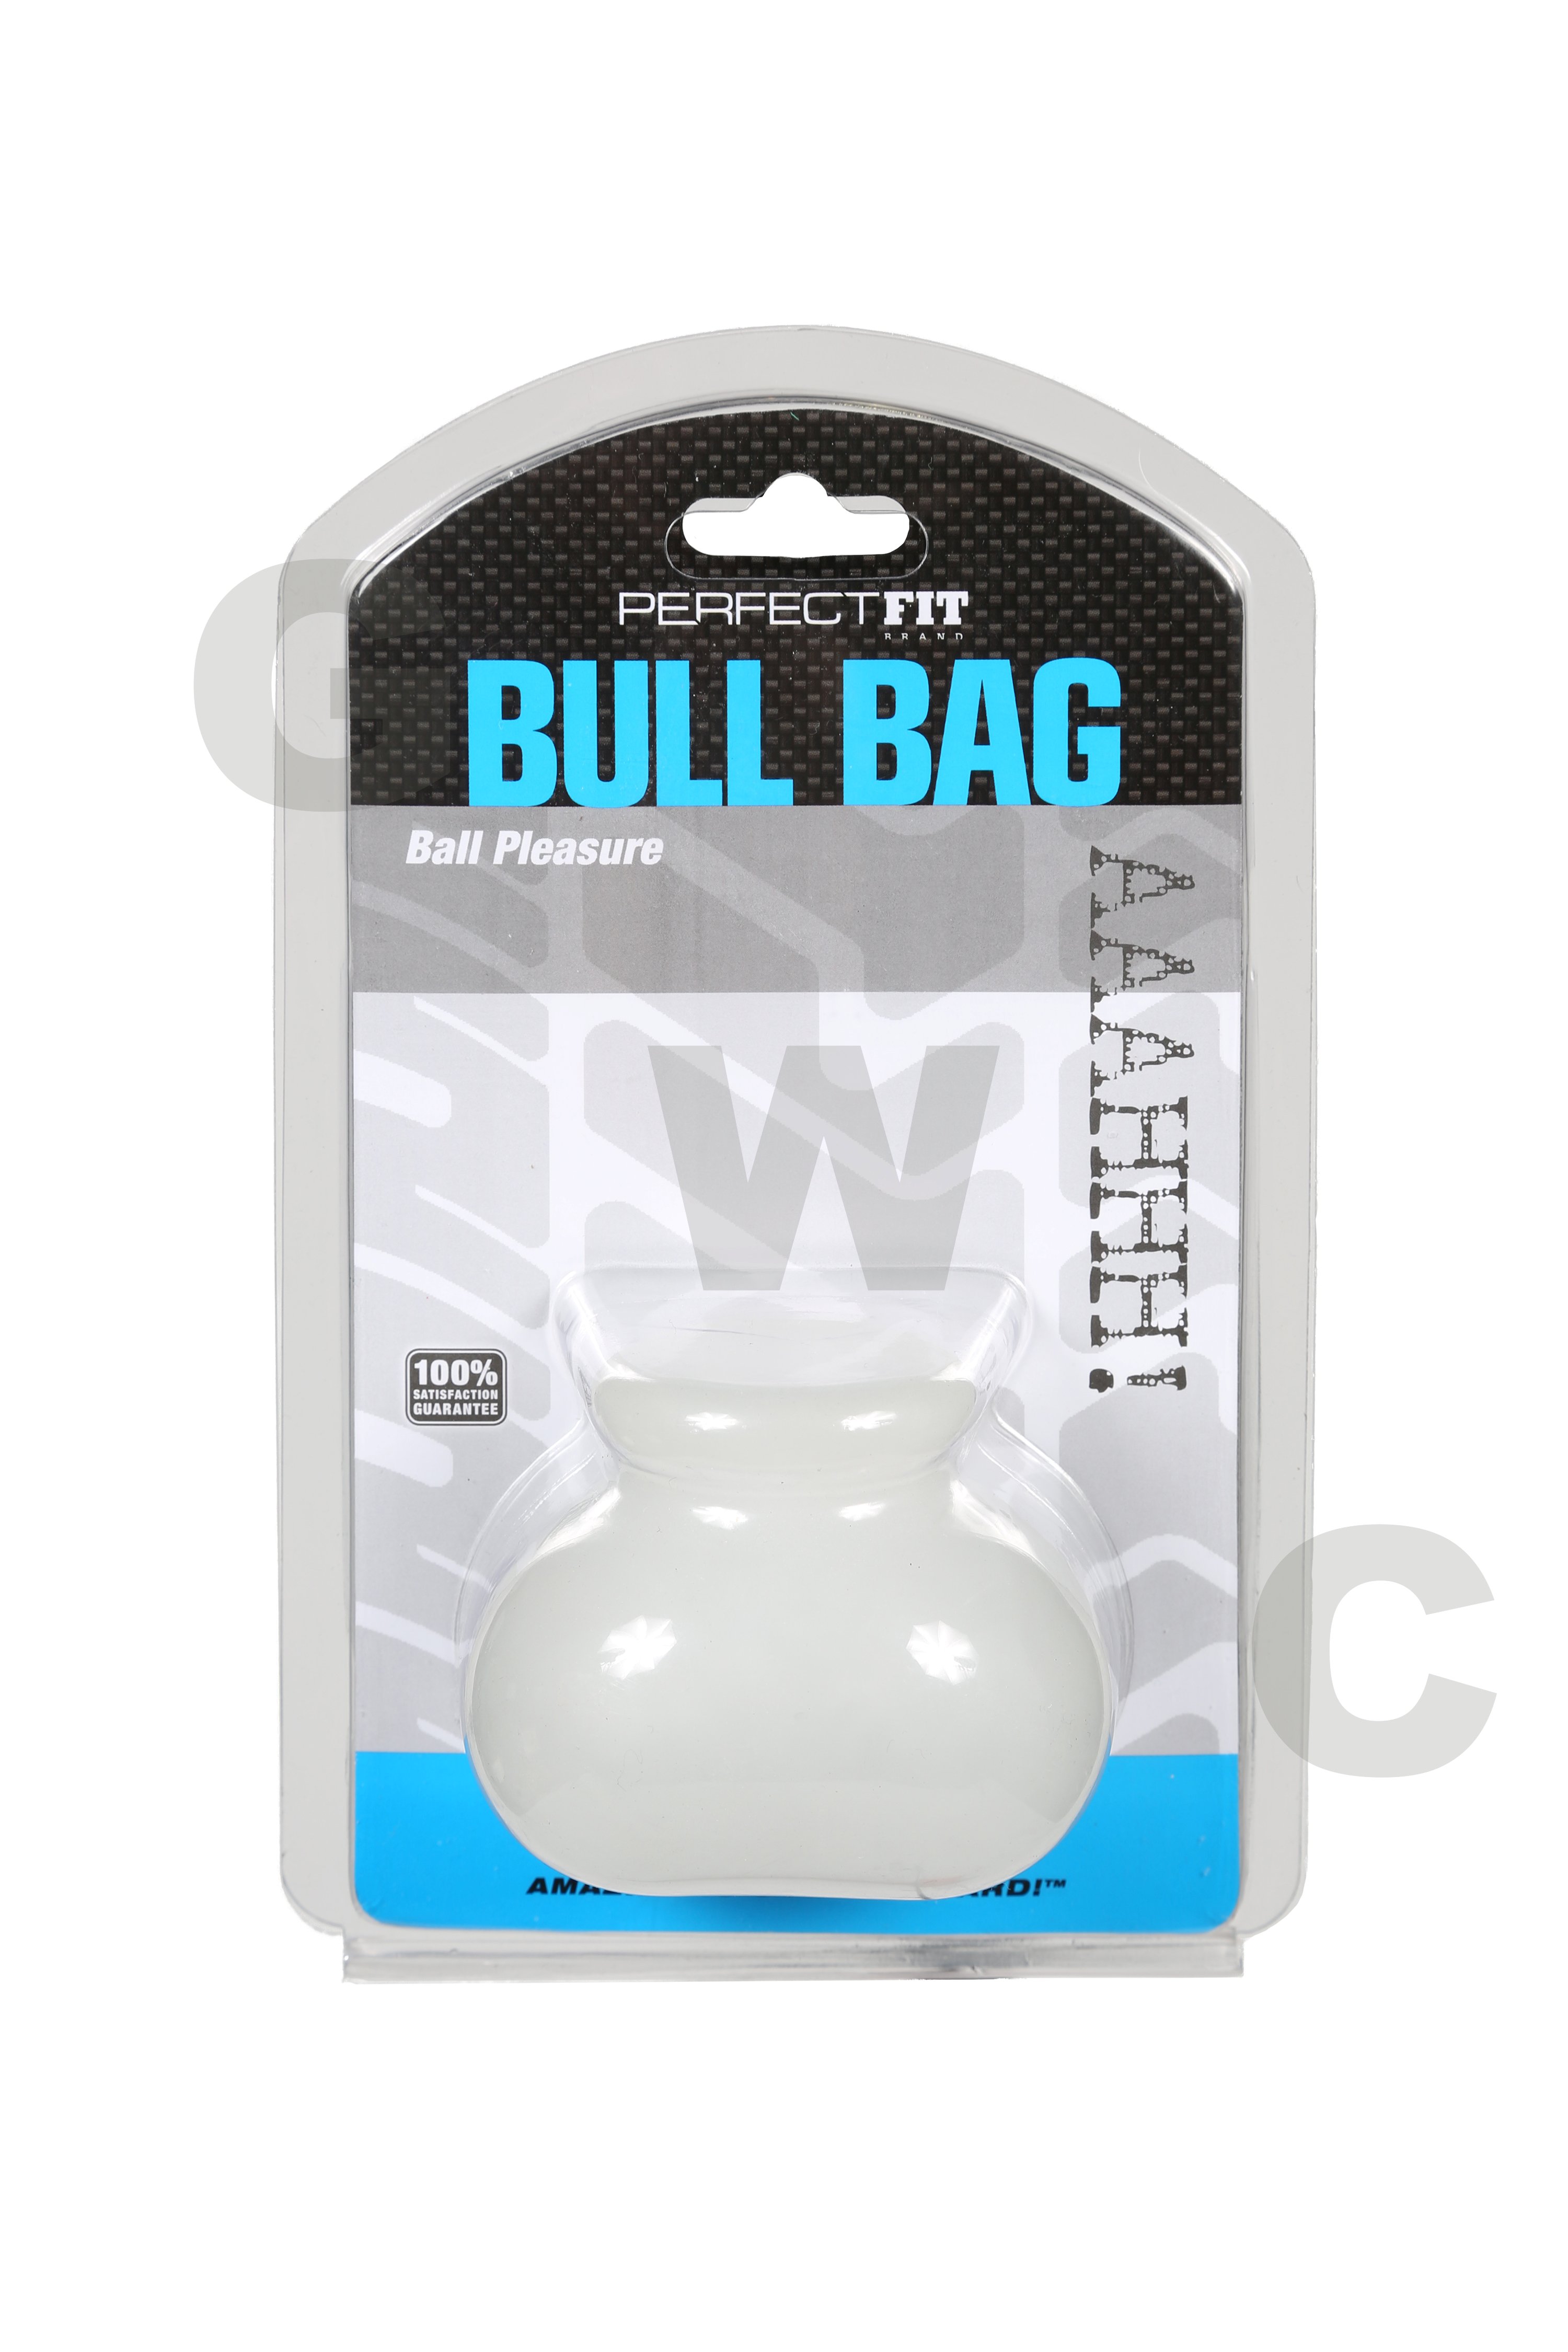 bull-bag_package_C_HIGHRES.jpg